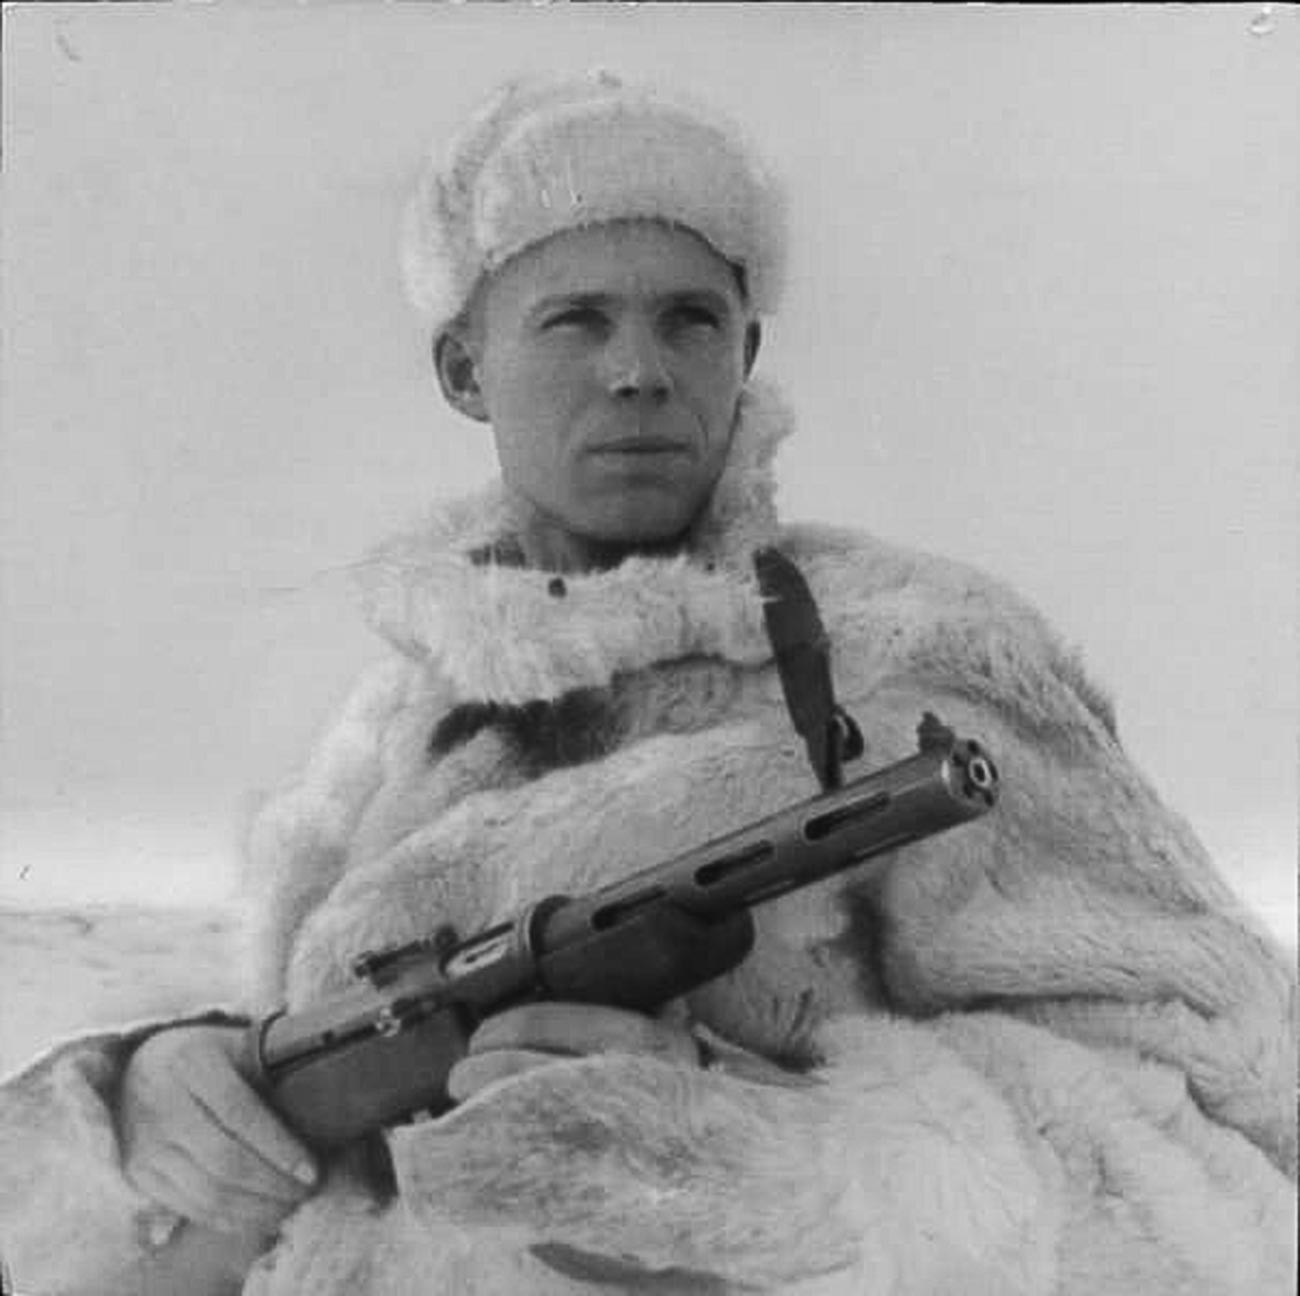 Oficial de inteligência militar soviética com chúba, 1943.